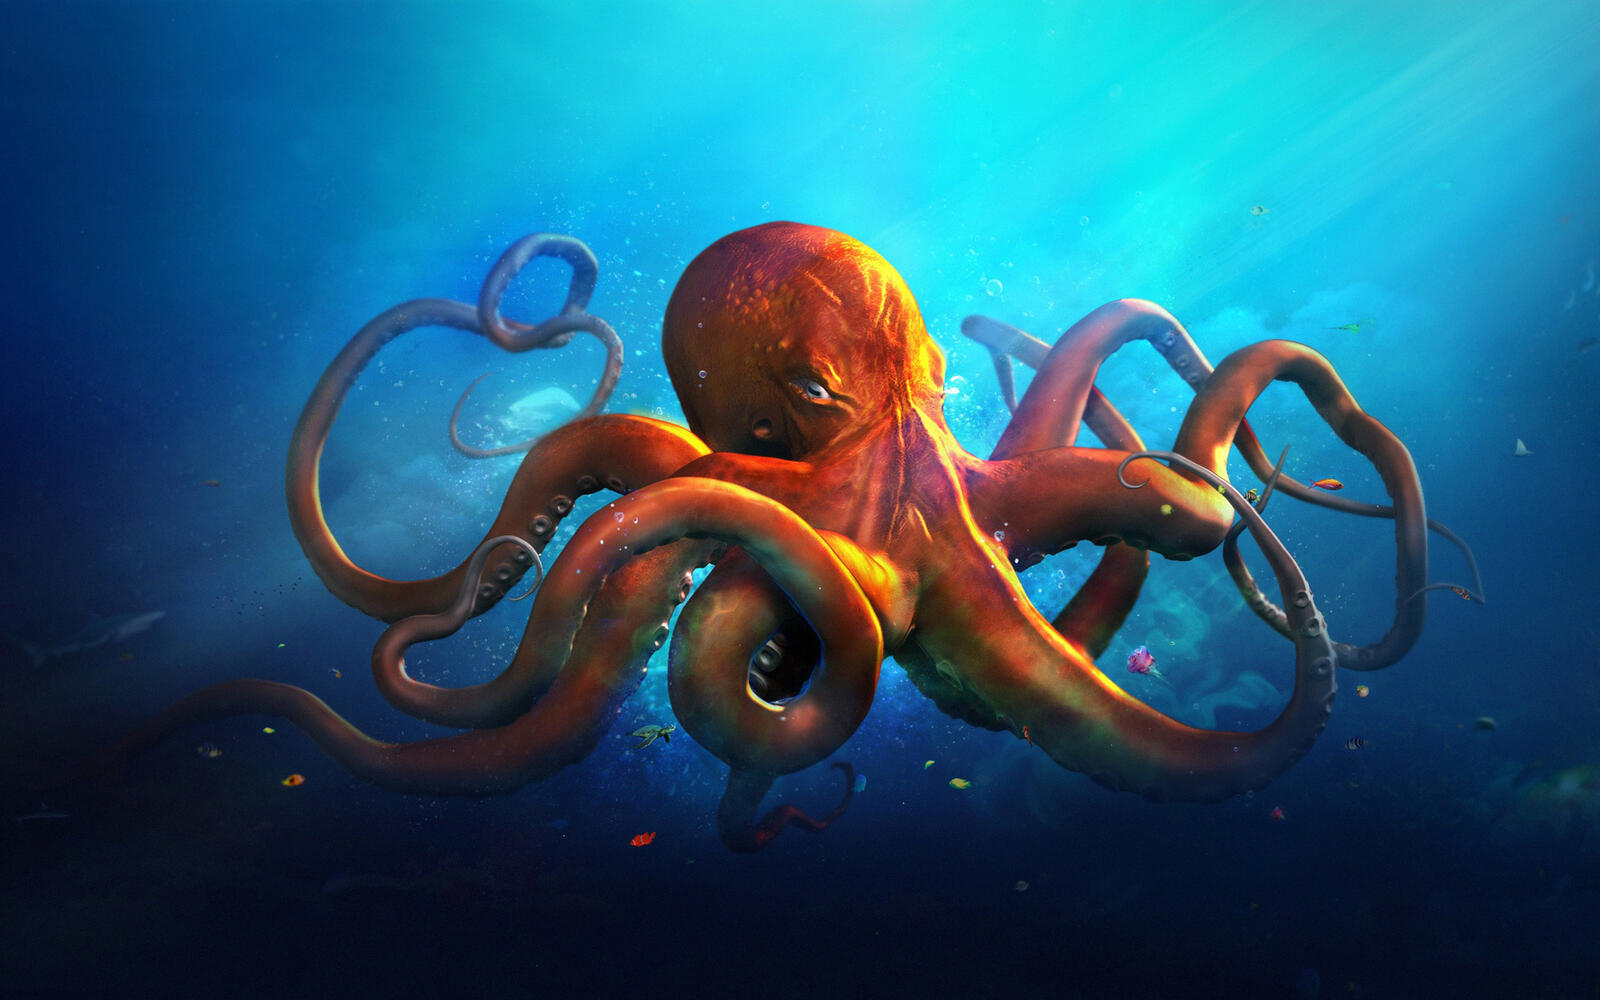 Wallpapers underwater world octopus tentacles on the desktop